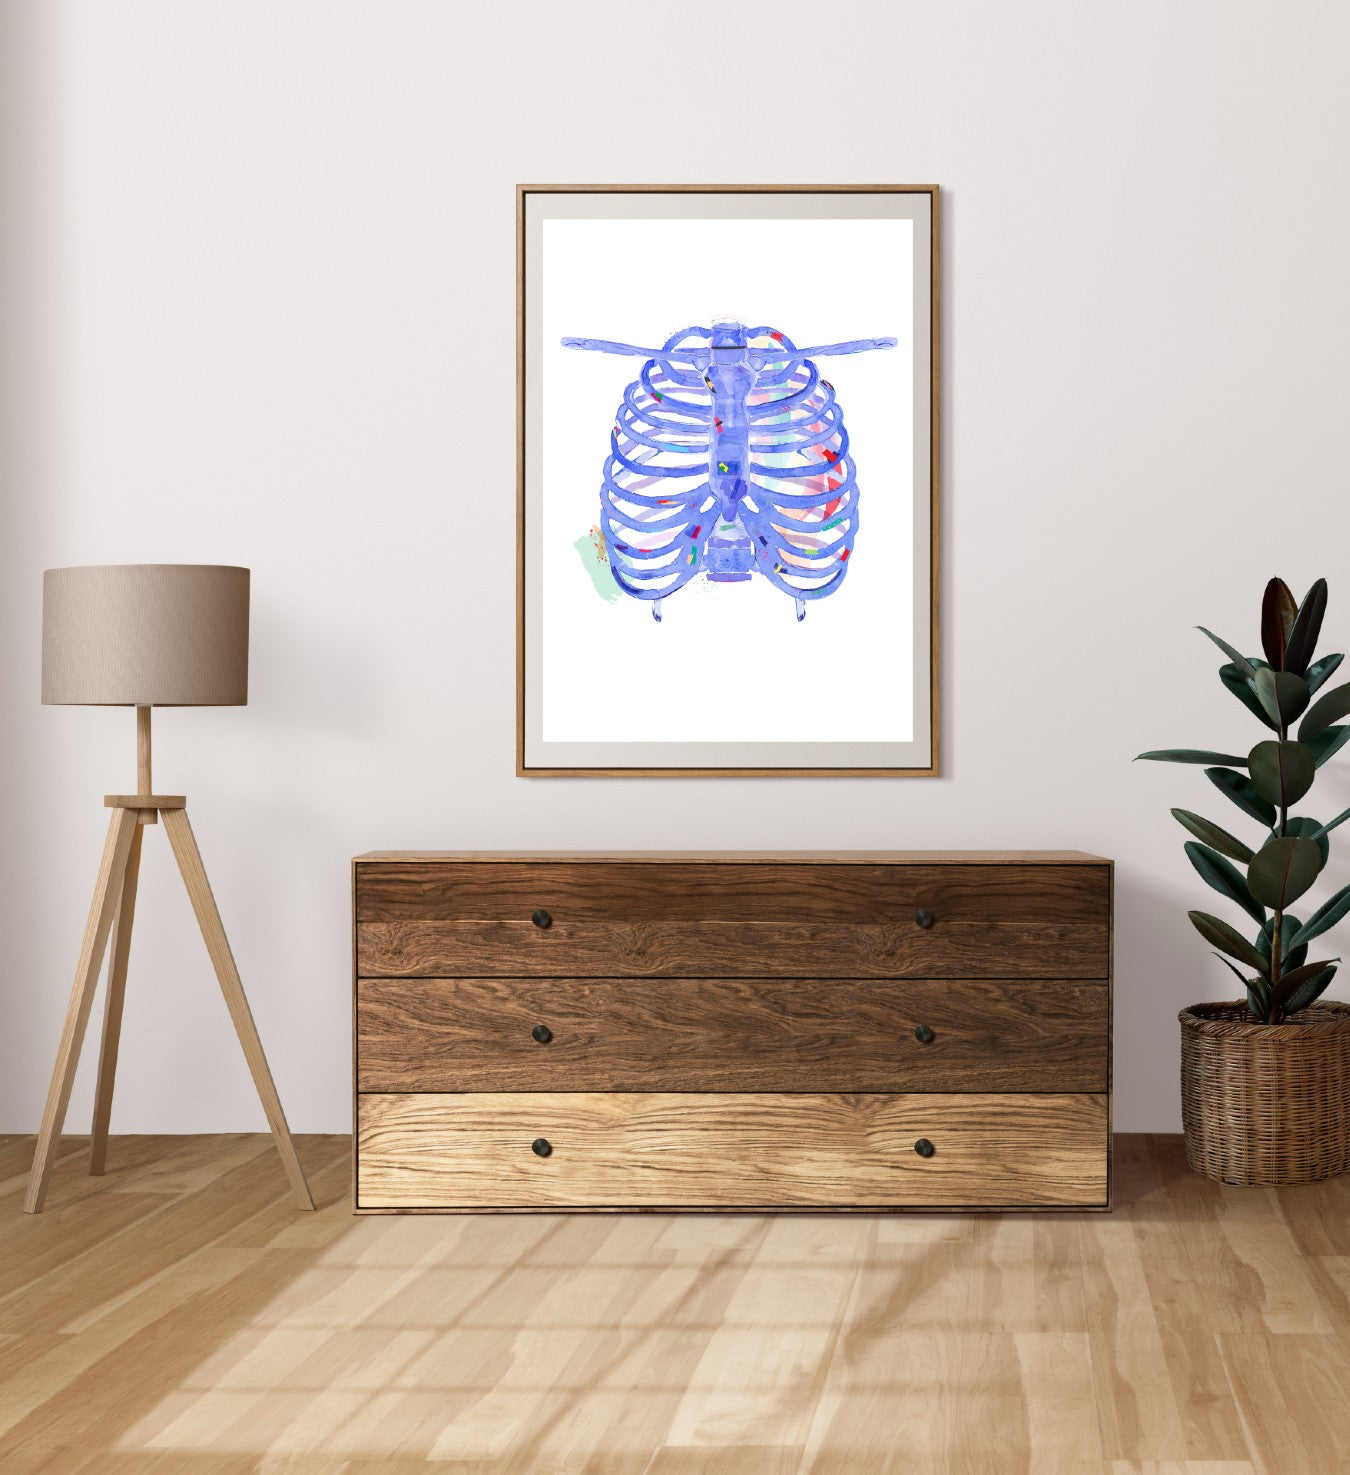 ribcage medical illustration